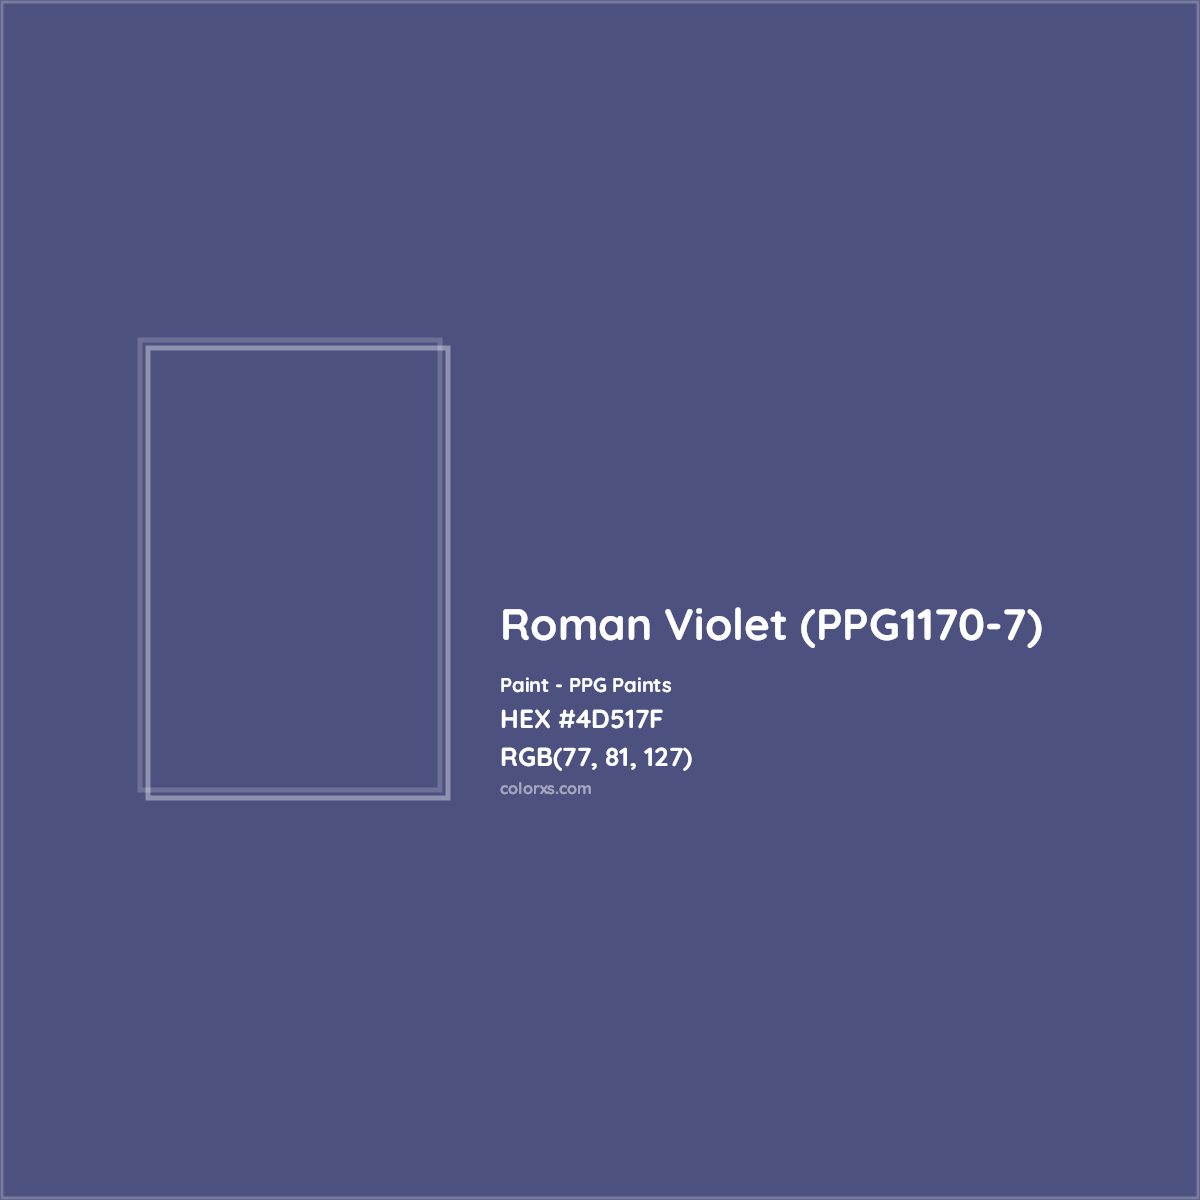 HEX #4D517F Roman Violet (PPG1170-7) Paint PPG Paints - Color Code